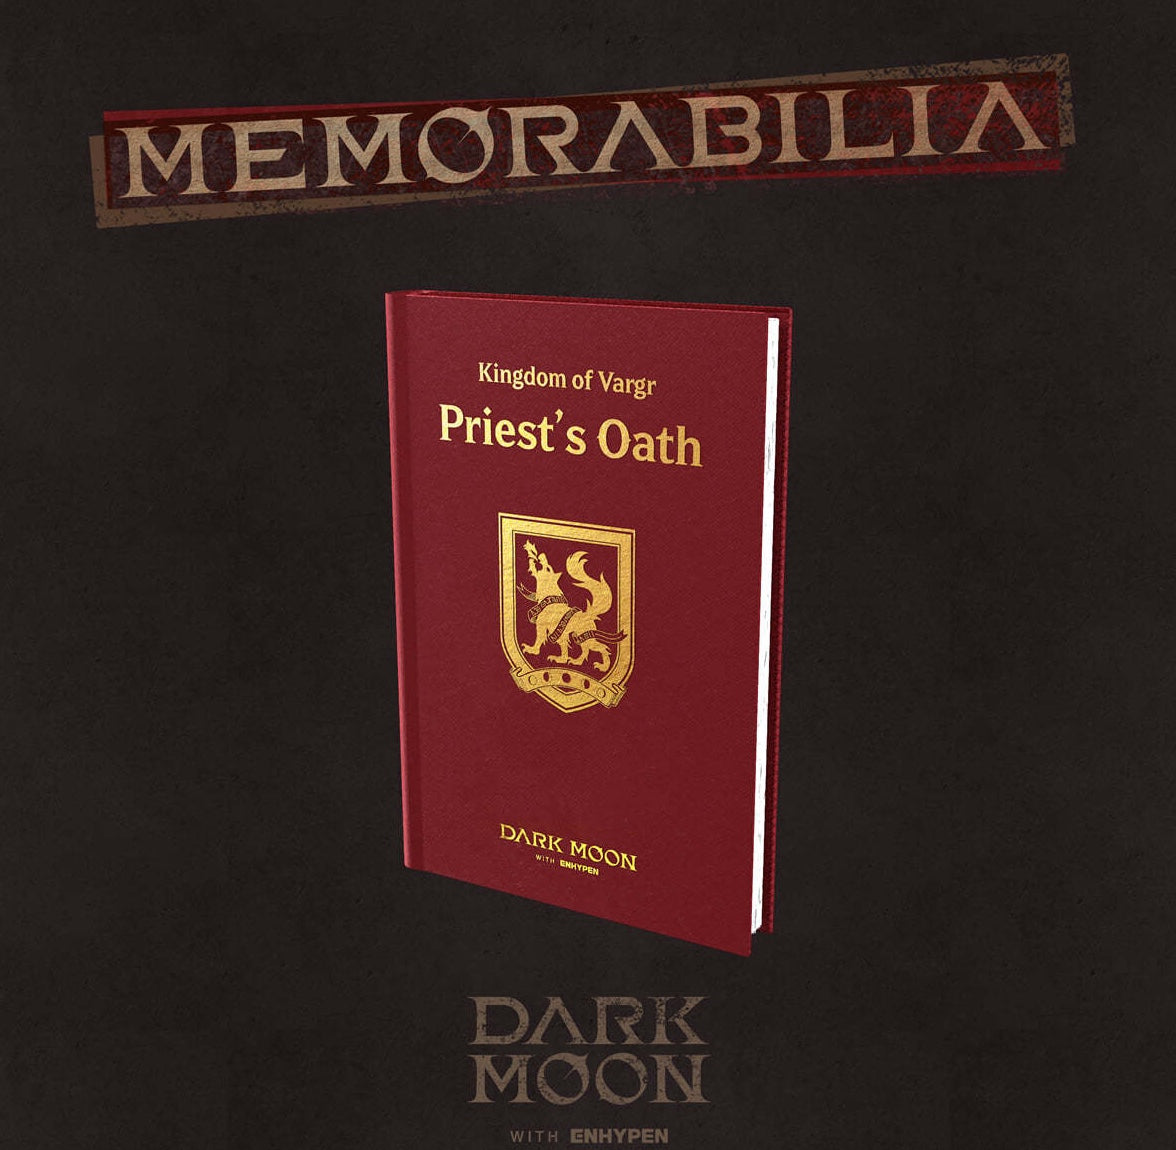 (PRE-ORDER) ENHYPEN - DARK MOON SPECIAL ALBUM [MEMORABILIA] (2 VERSIONS)